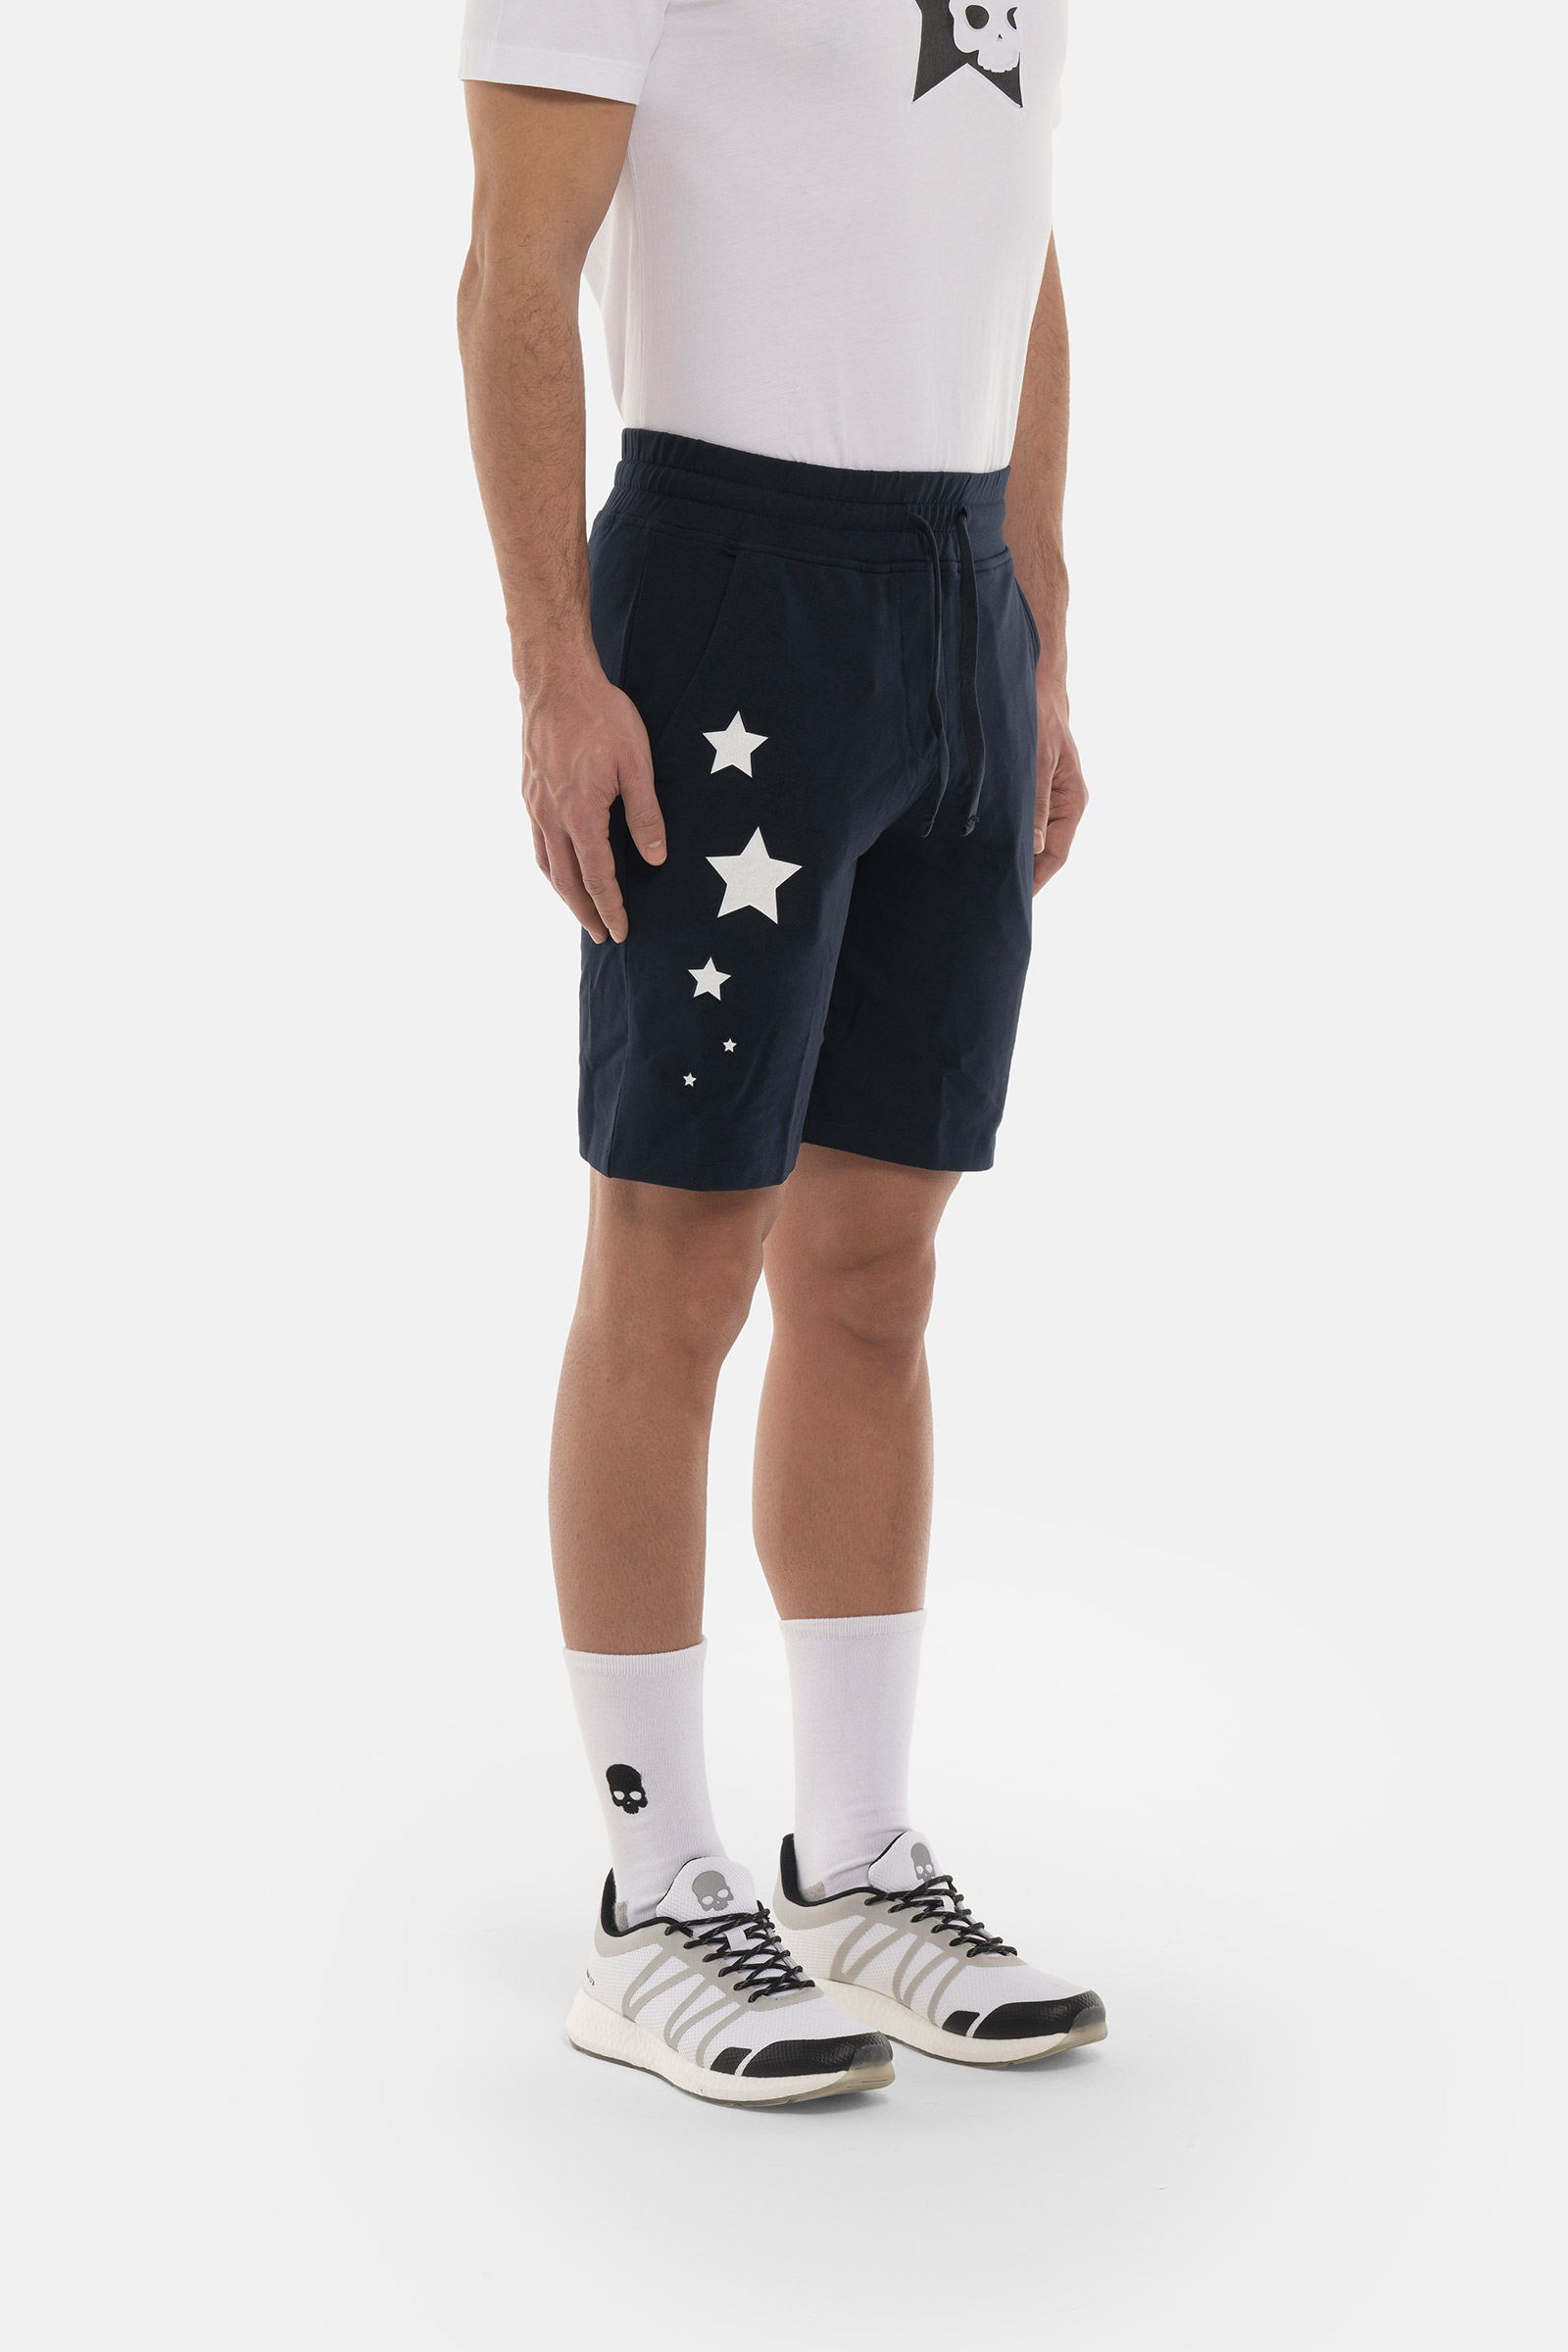 STARS SHORTS - BLUE - Hydrogen - Luxury Sportwear